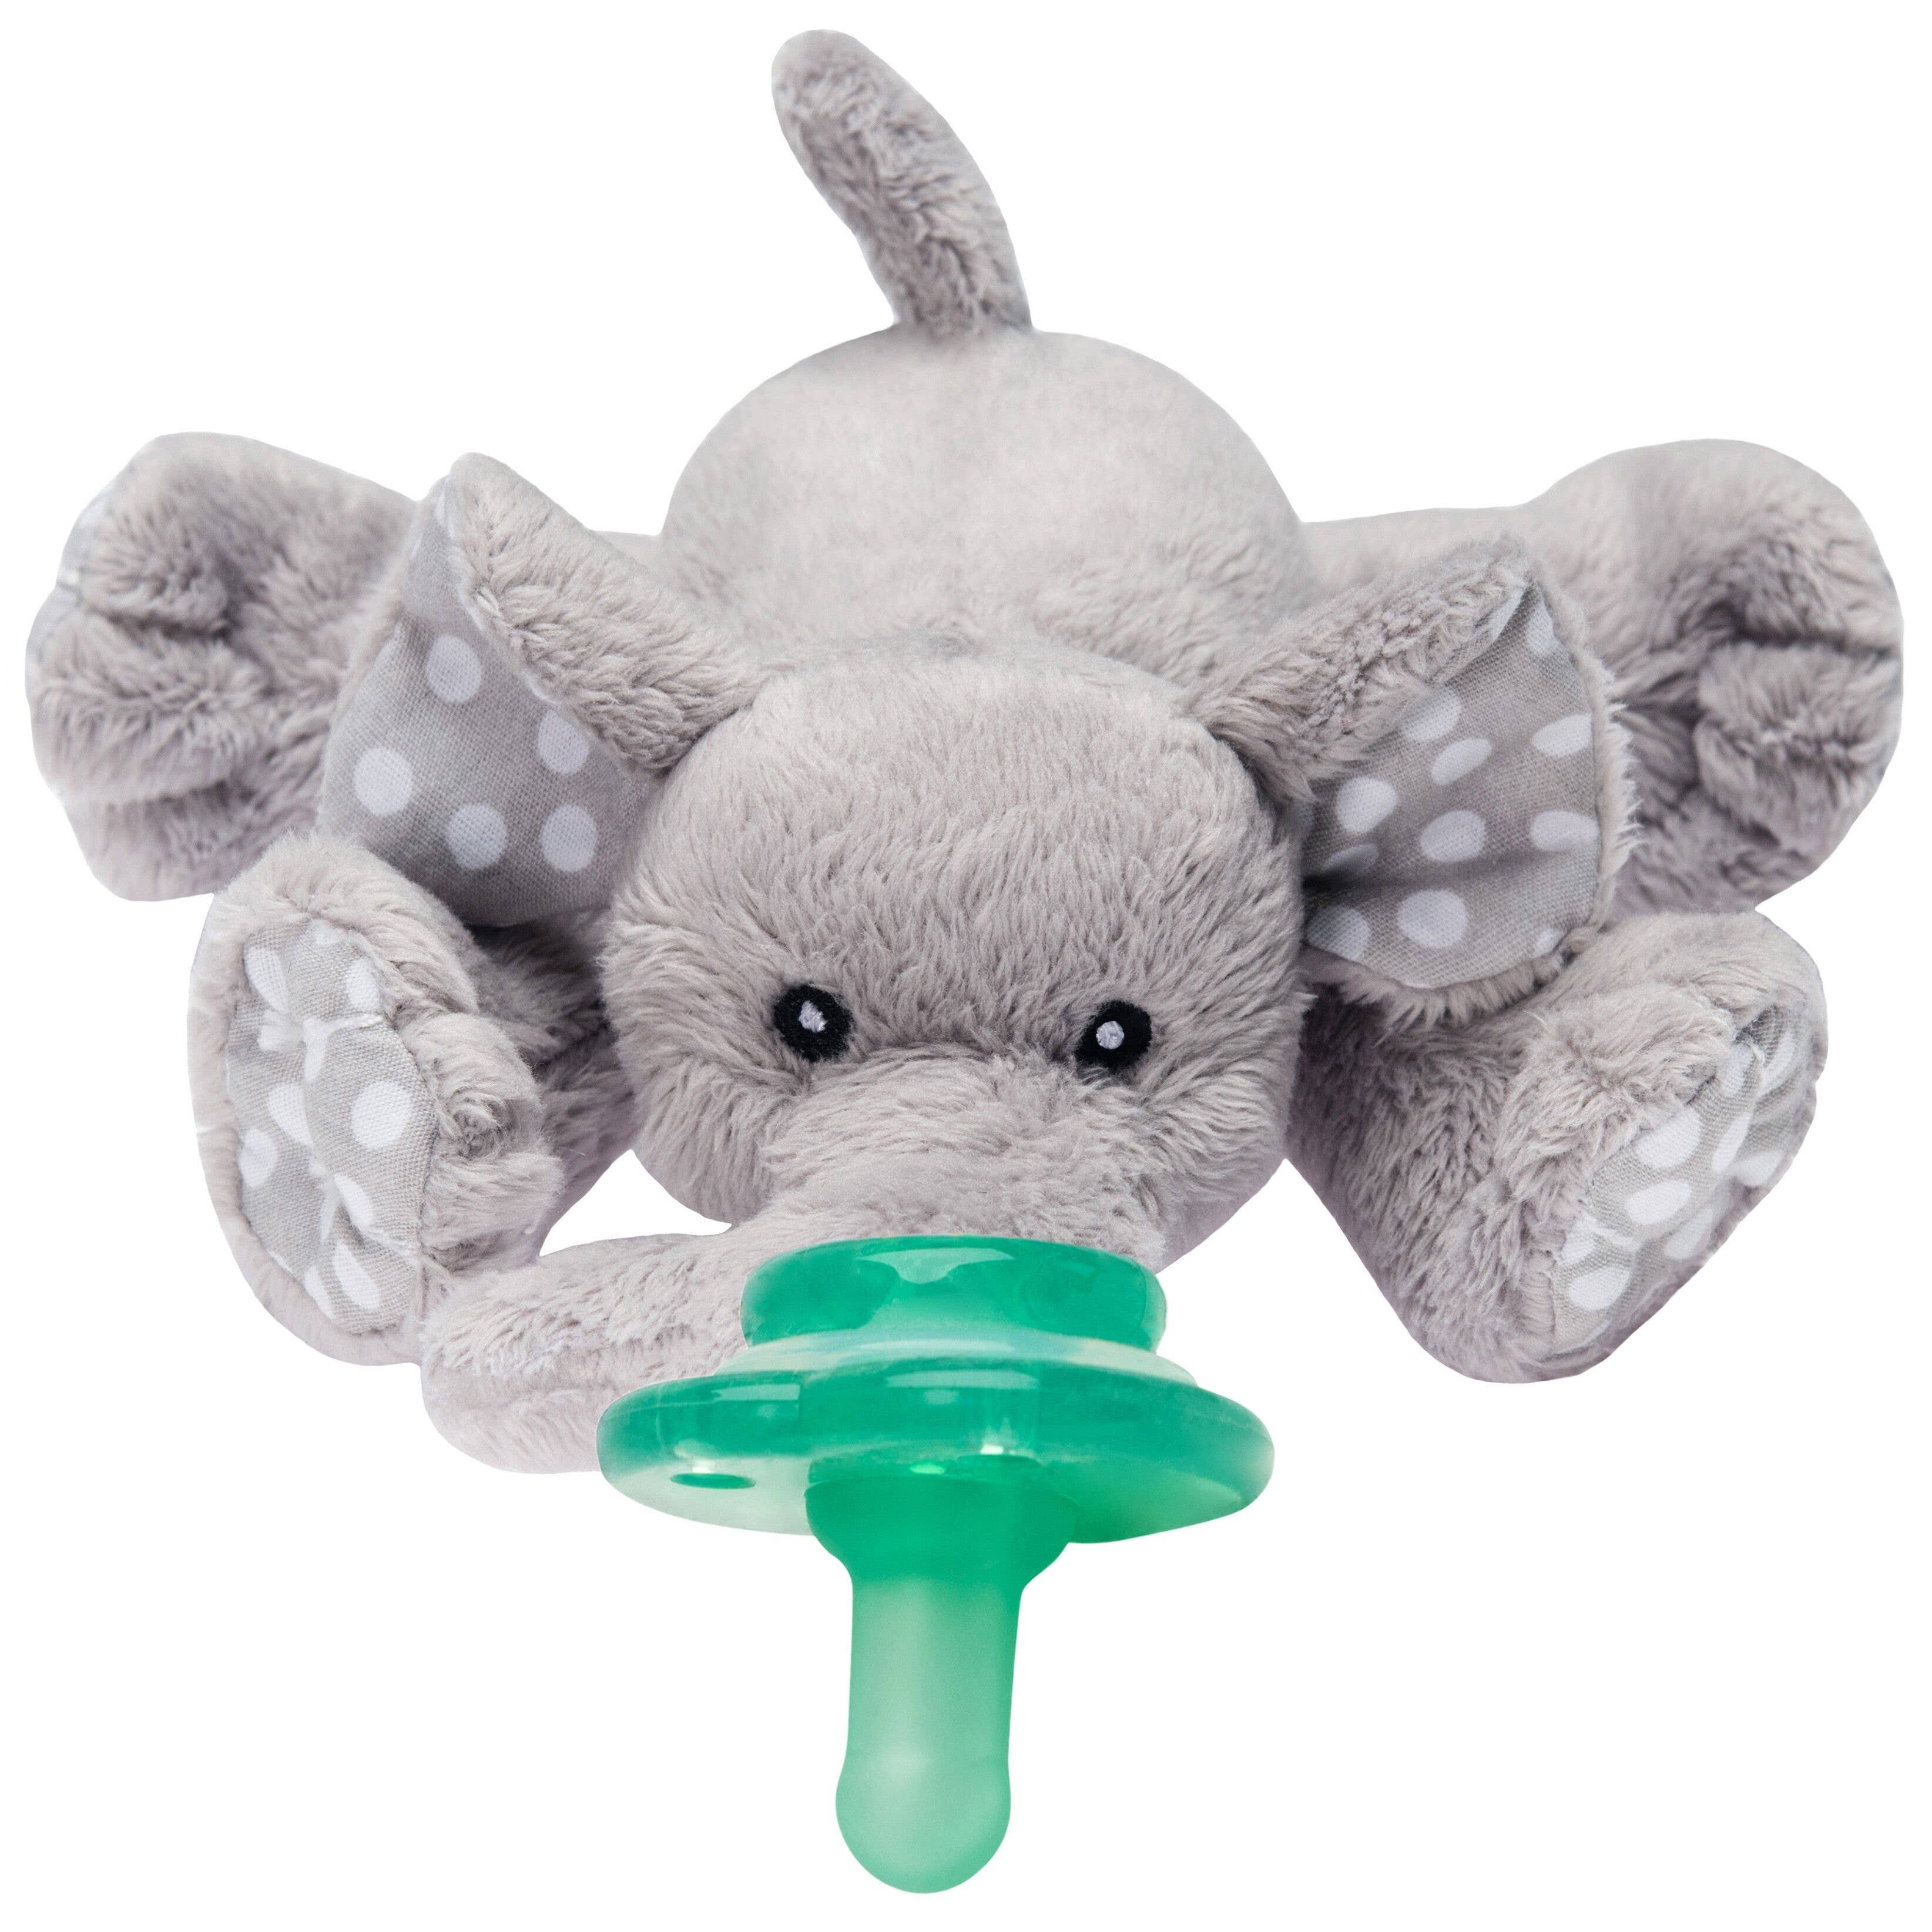 Nookums Elephant Buddy Plush Toy